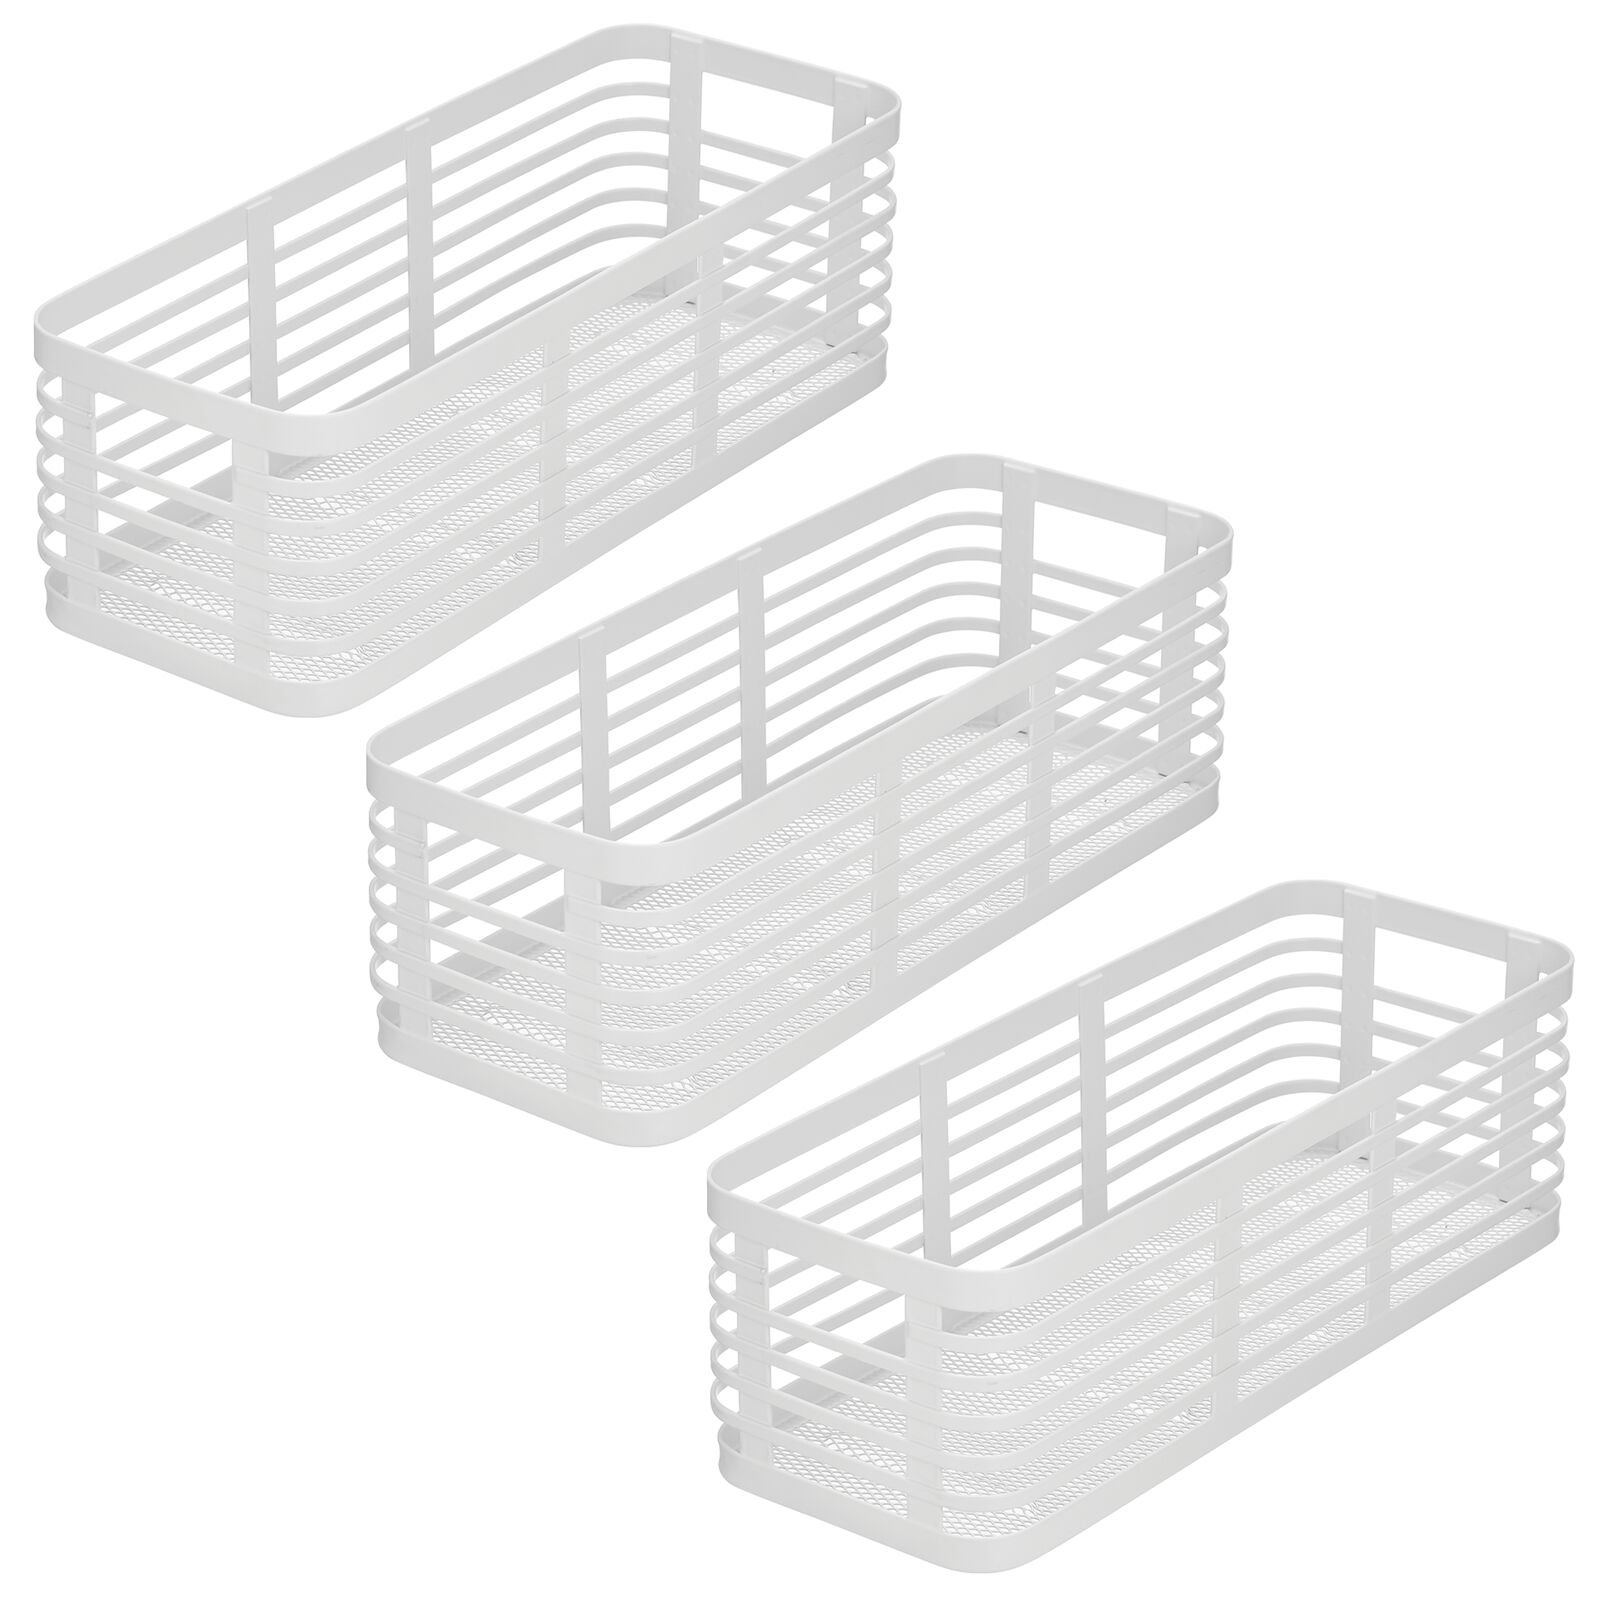 3個セット・送料無料 mDesign Modern Decor Metal Wire Food Organizer Storage Bin Basket  for Kitch